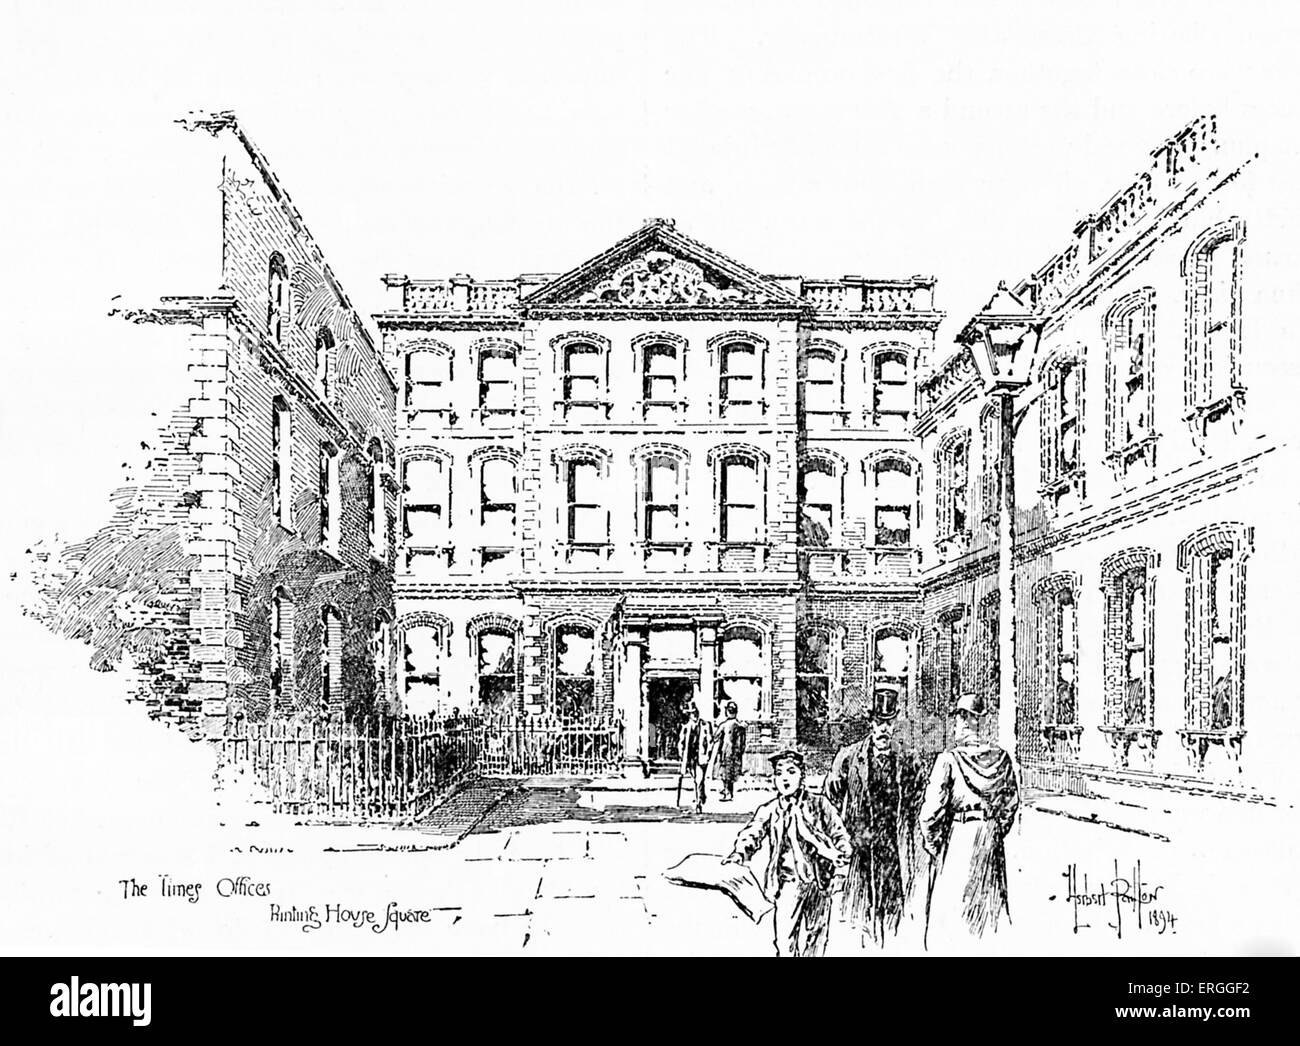 Die Zeiten Office Printing House Square, London. VEREINIGTES KÖNIGREICH. Abbildung, 1894. Stockfoto